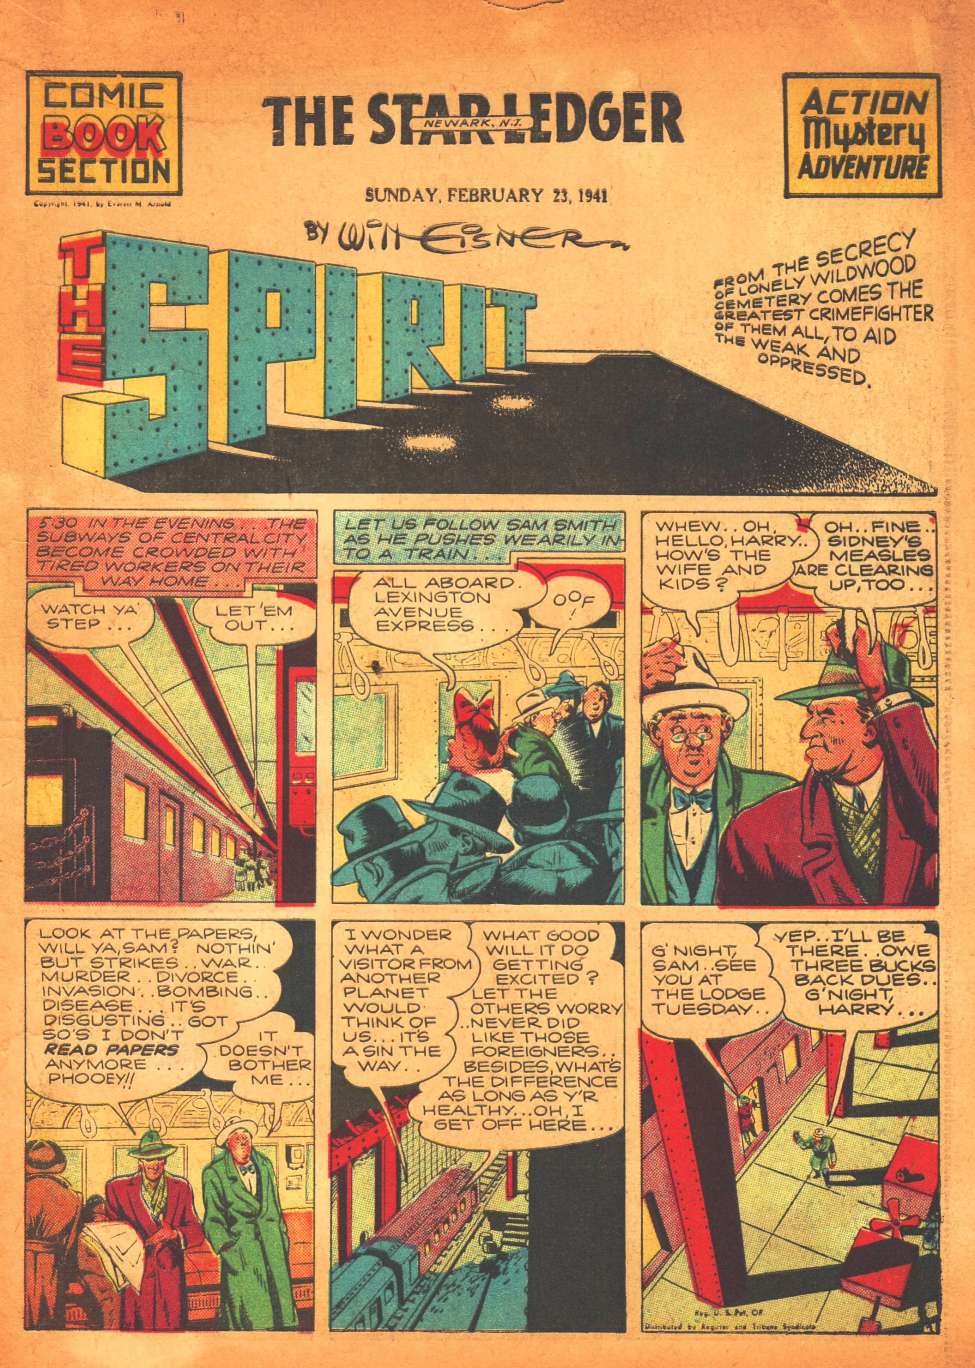 Comic Book Cover For The Spirit (1941-02-23) - Star-Ledger